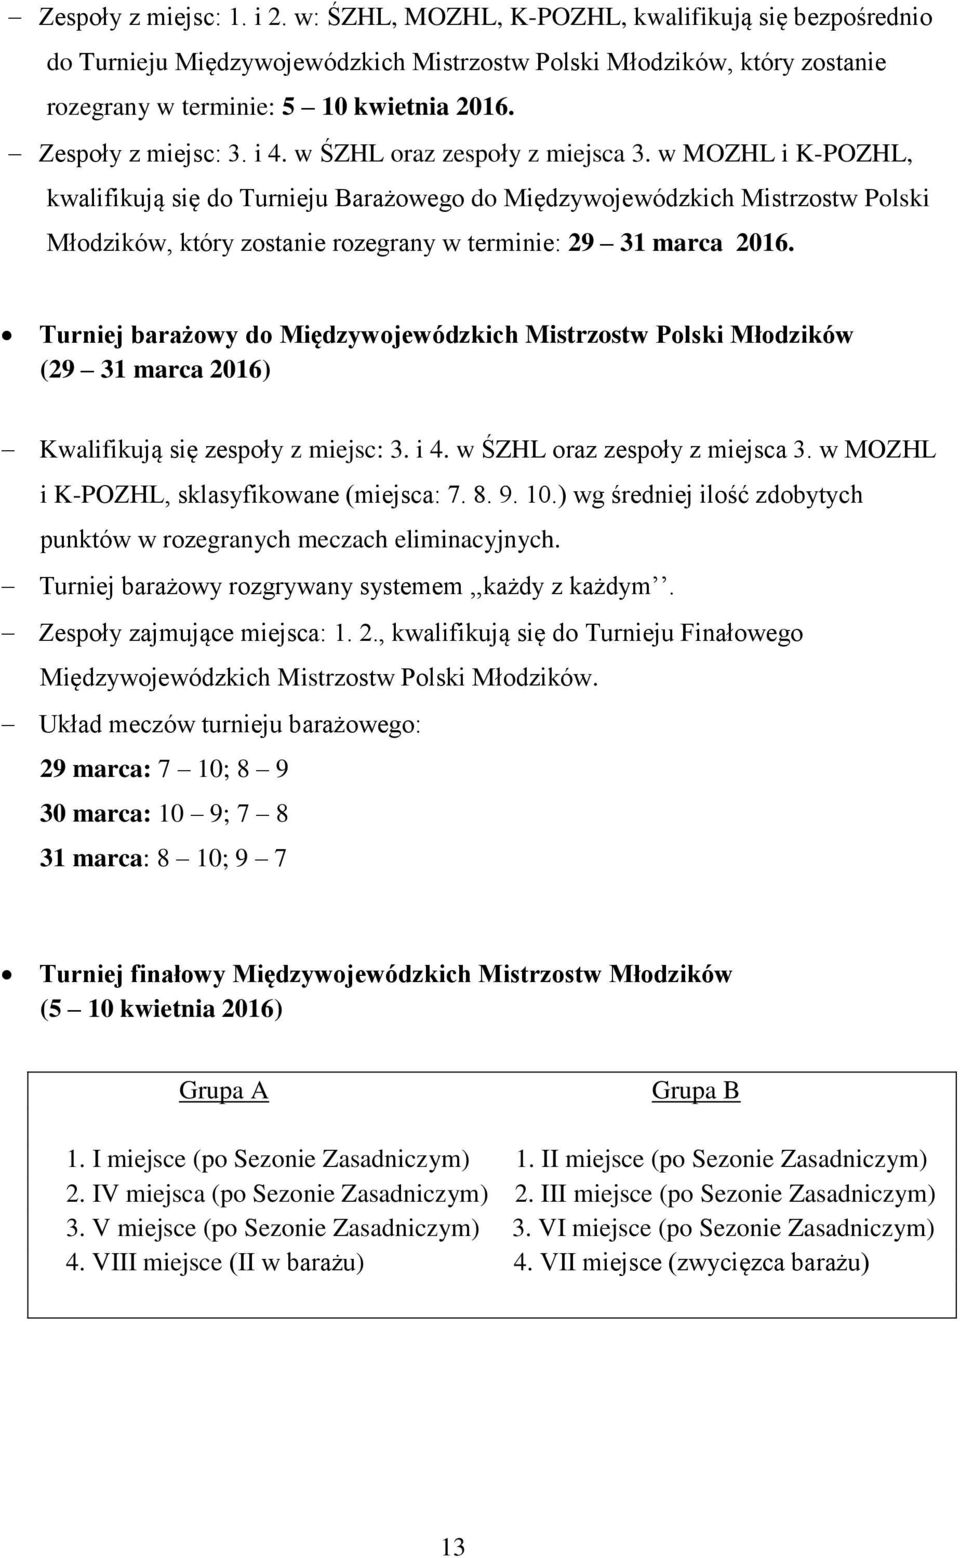 w MOZHL i K-POZHL, kwalifikują się do Turnieju Barażowego do Międzywojewódzkich Mistrzostw Polski Młodzików, który zostanie rozegrany w terminie: 29 31 marca 2016.